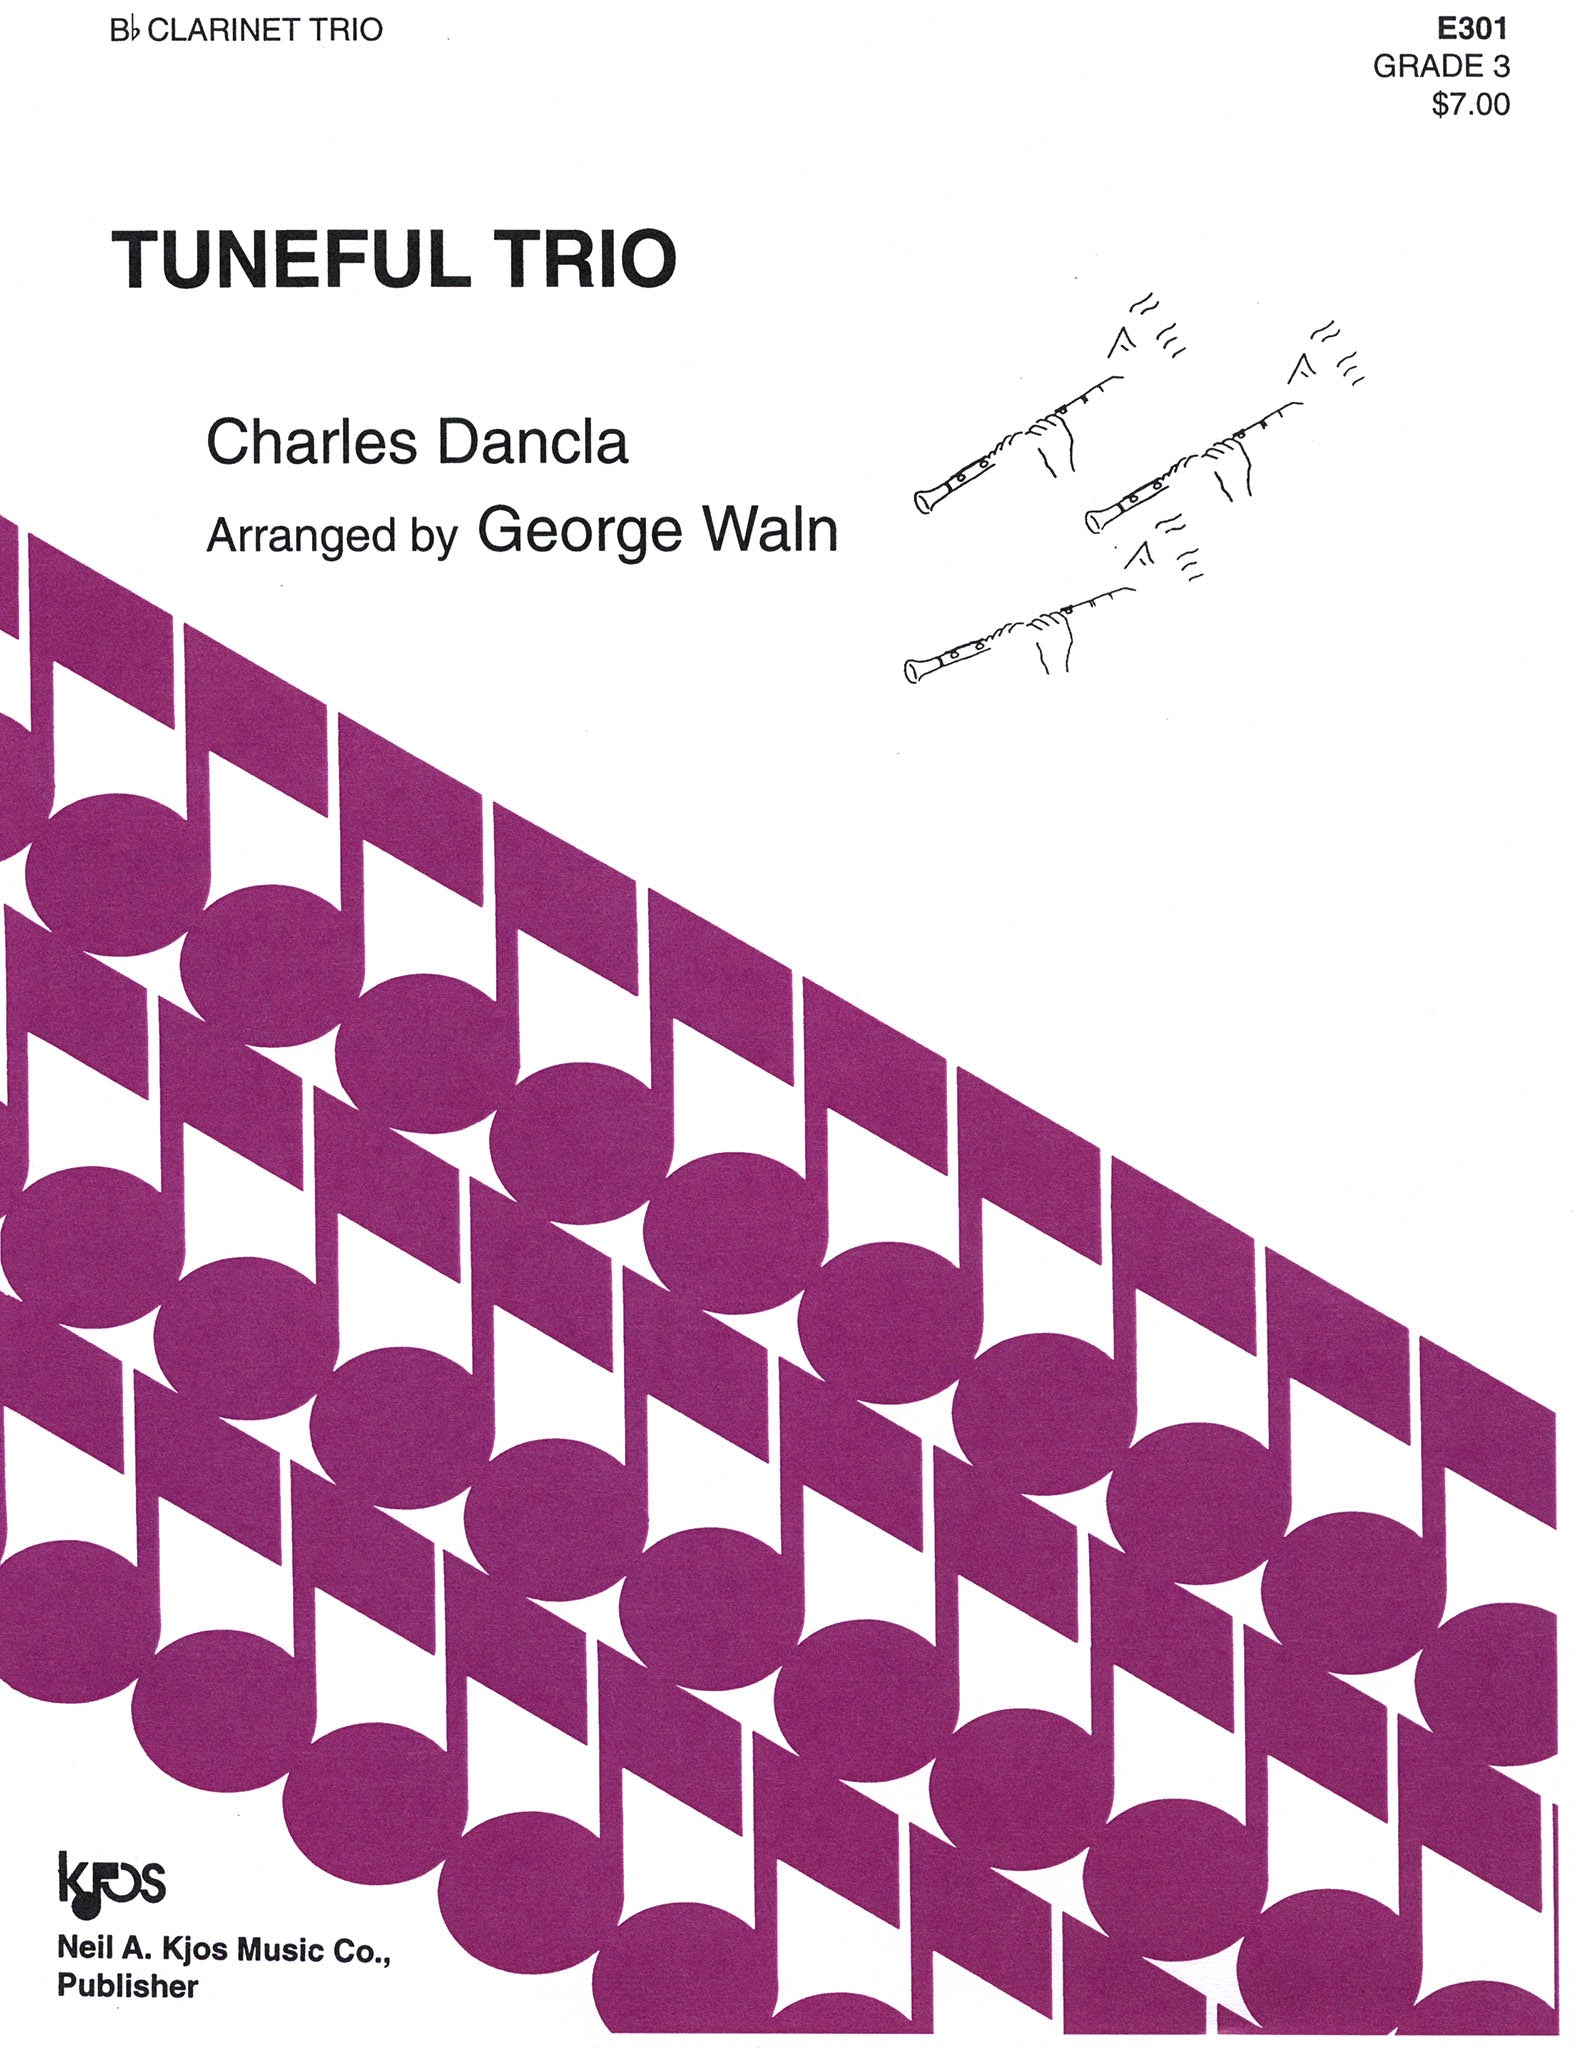 Tuneful Trio Cover